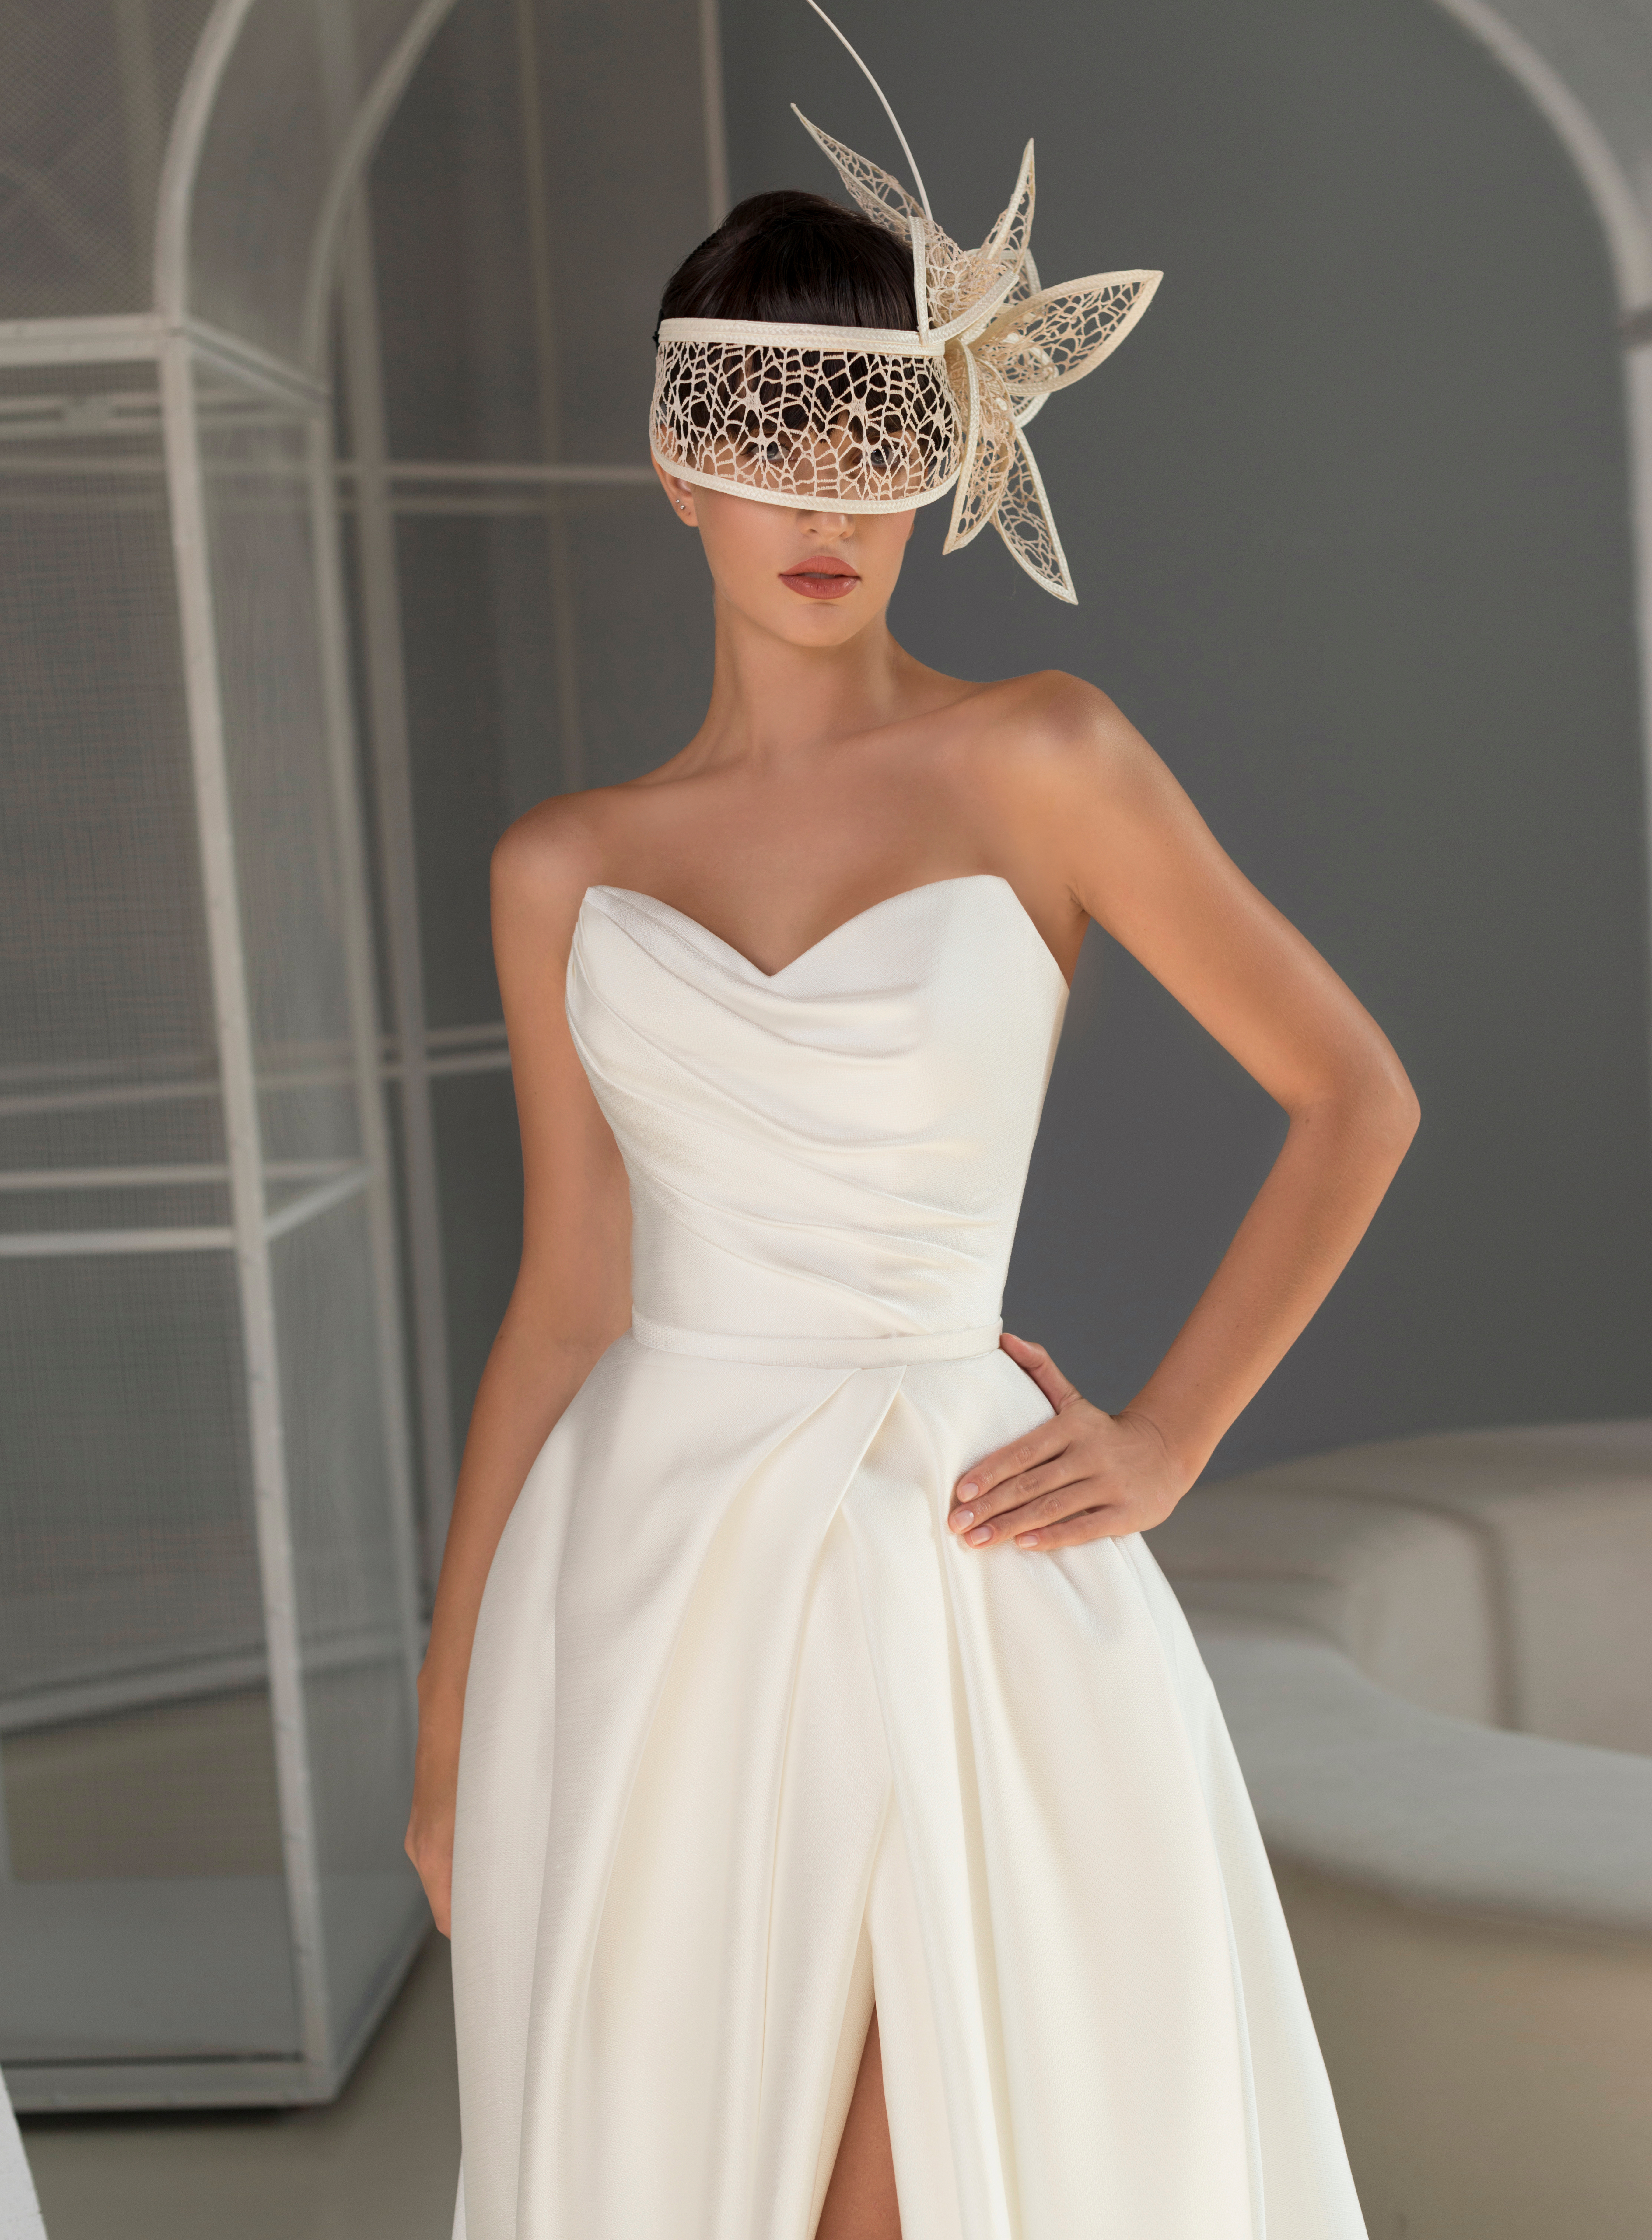 Купить свадебное платье «Айседора» Мэрри Марк из коллекции 2022 года в Москве